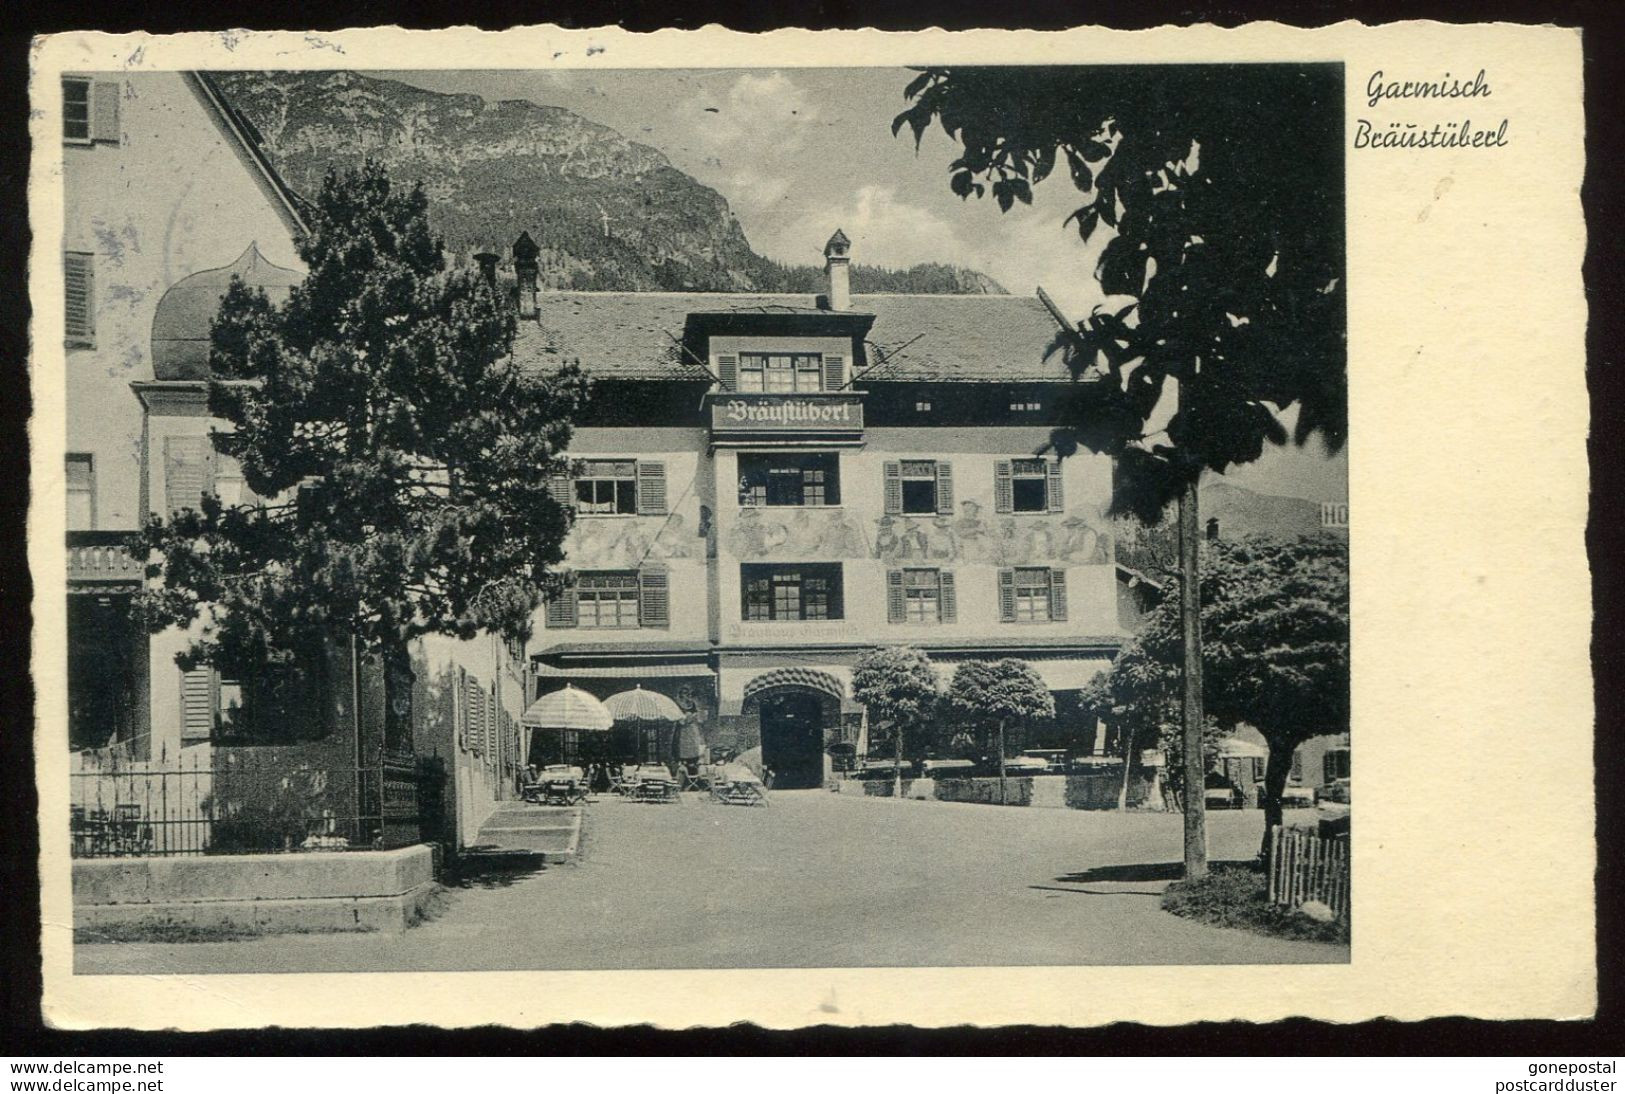 GERMANY Garmisch 1936 Brausuberl Hotel. Olympic Slogan (h1255) - Garmisch-Partenkirchen